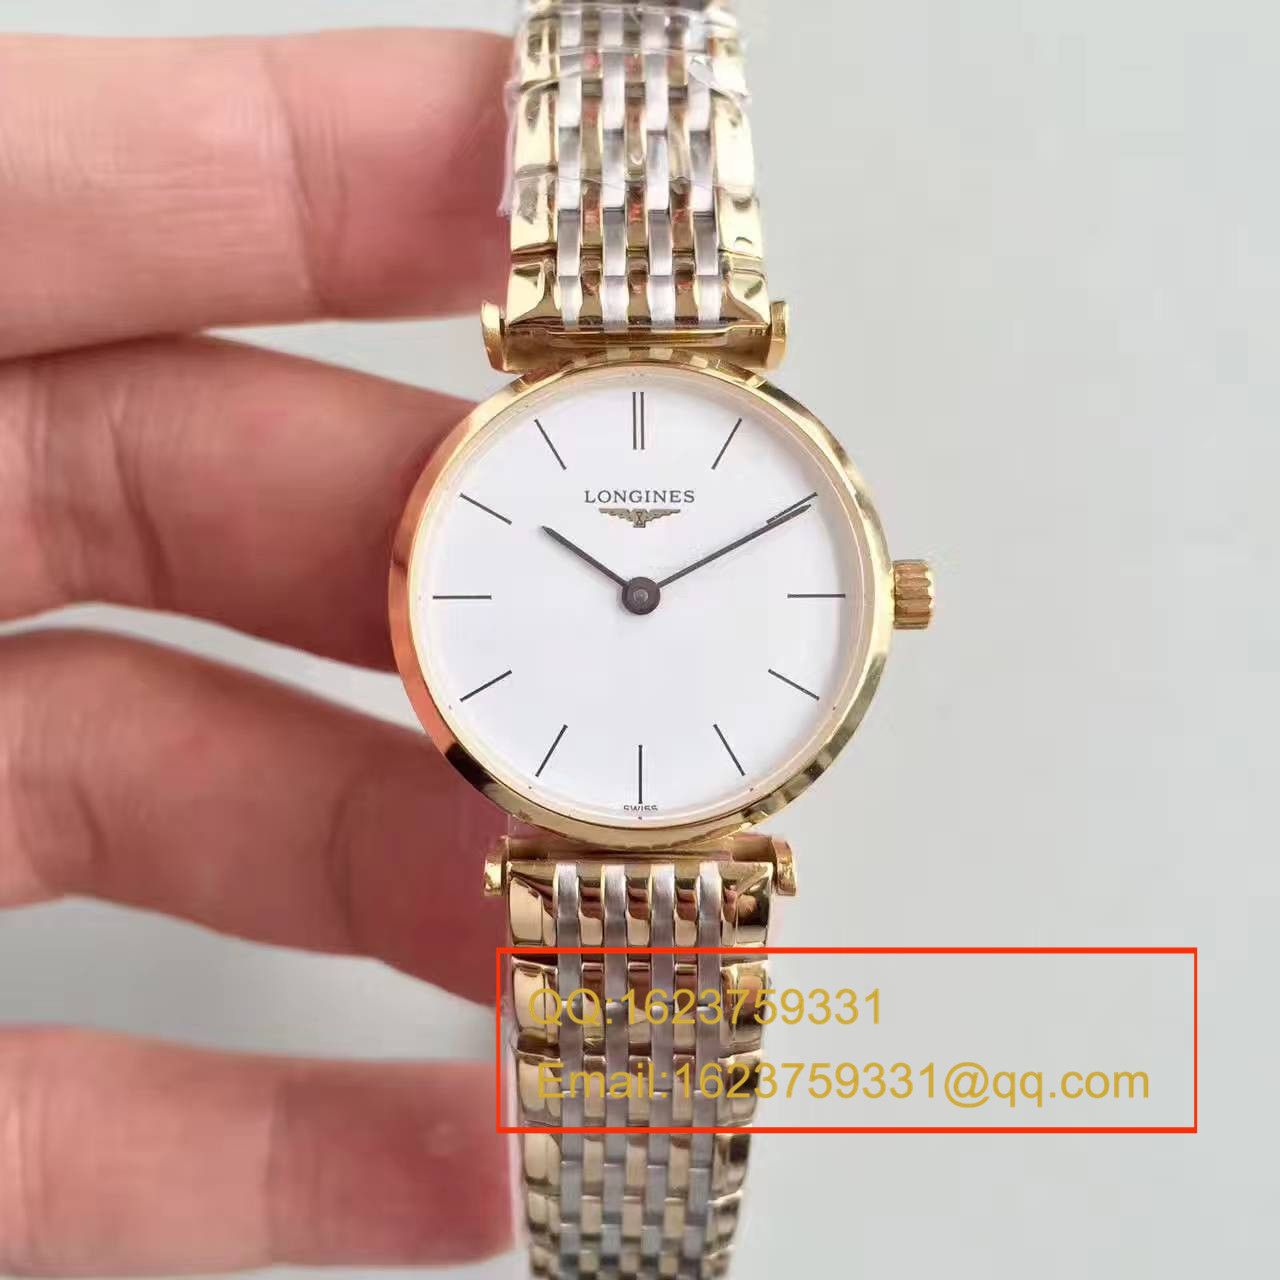 【MK厂一比一超A精仿手表】浪琴优雅系列L4.209.2.12.7女士腕表 / L073B